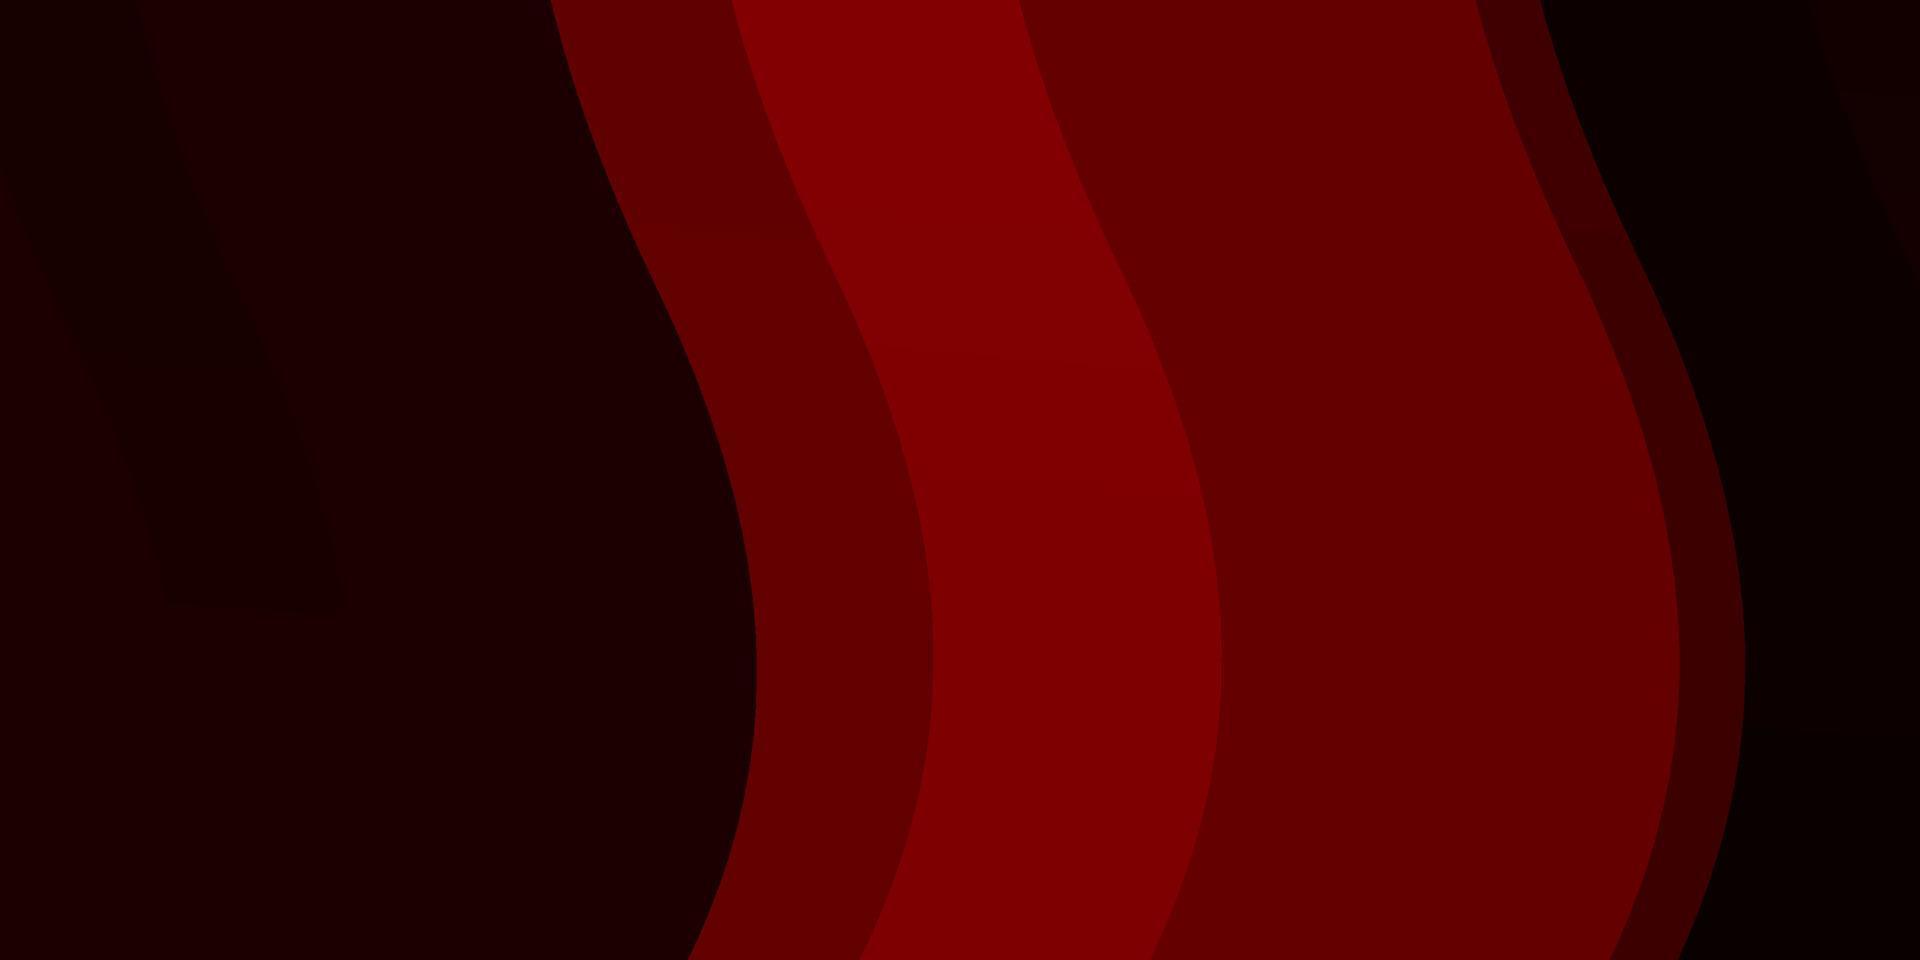 sfondo vettoriale rosso scuro con curve.